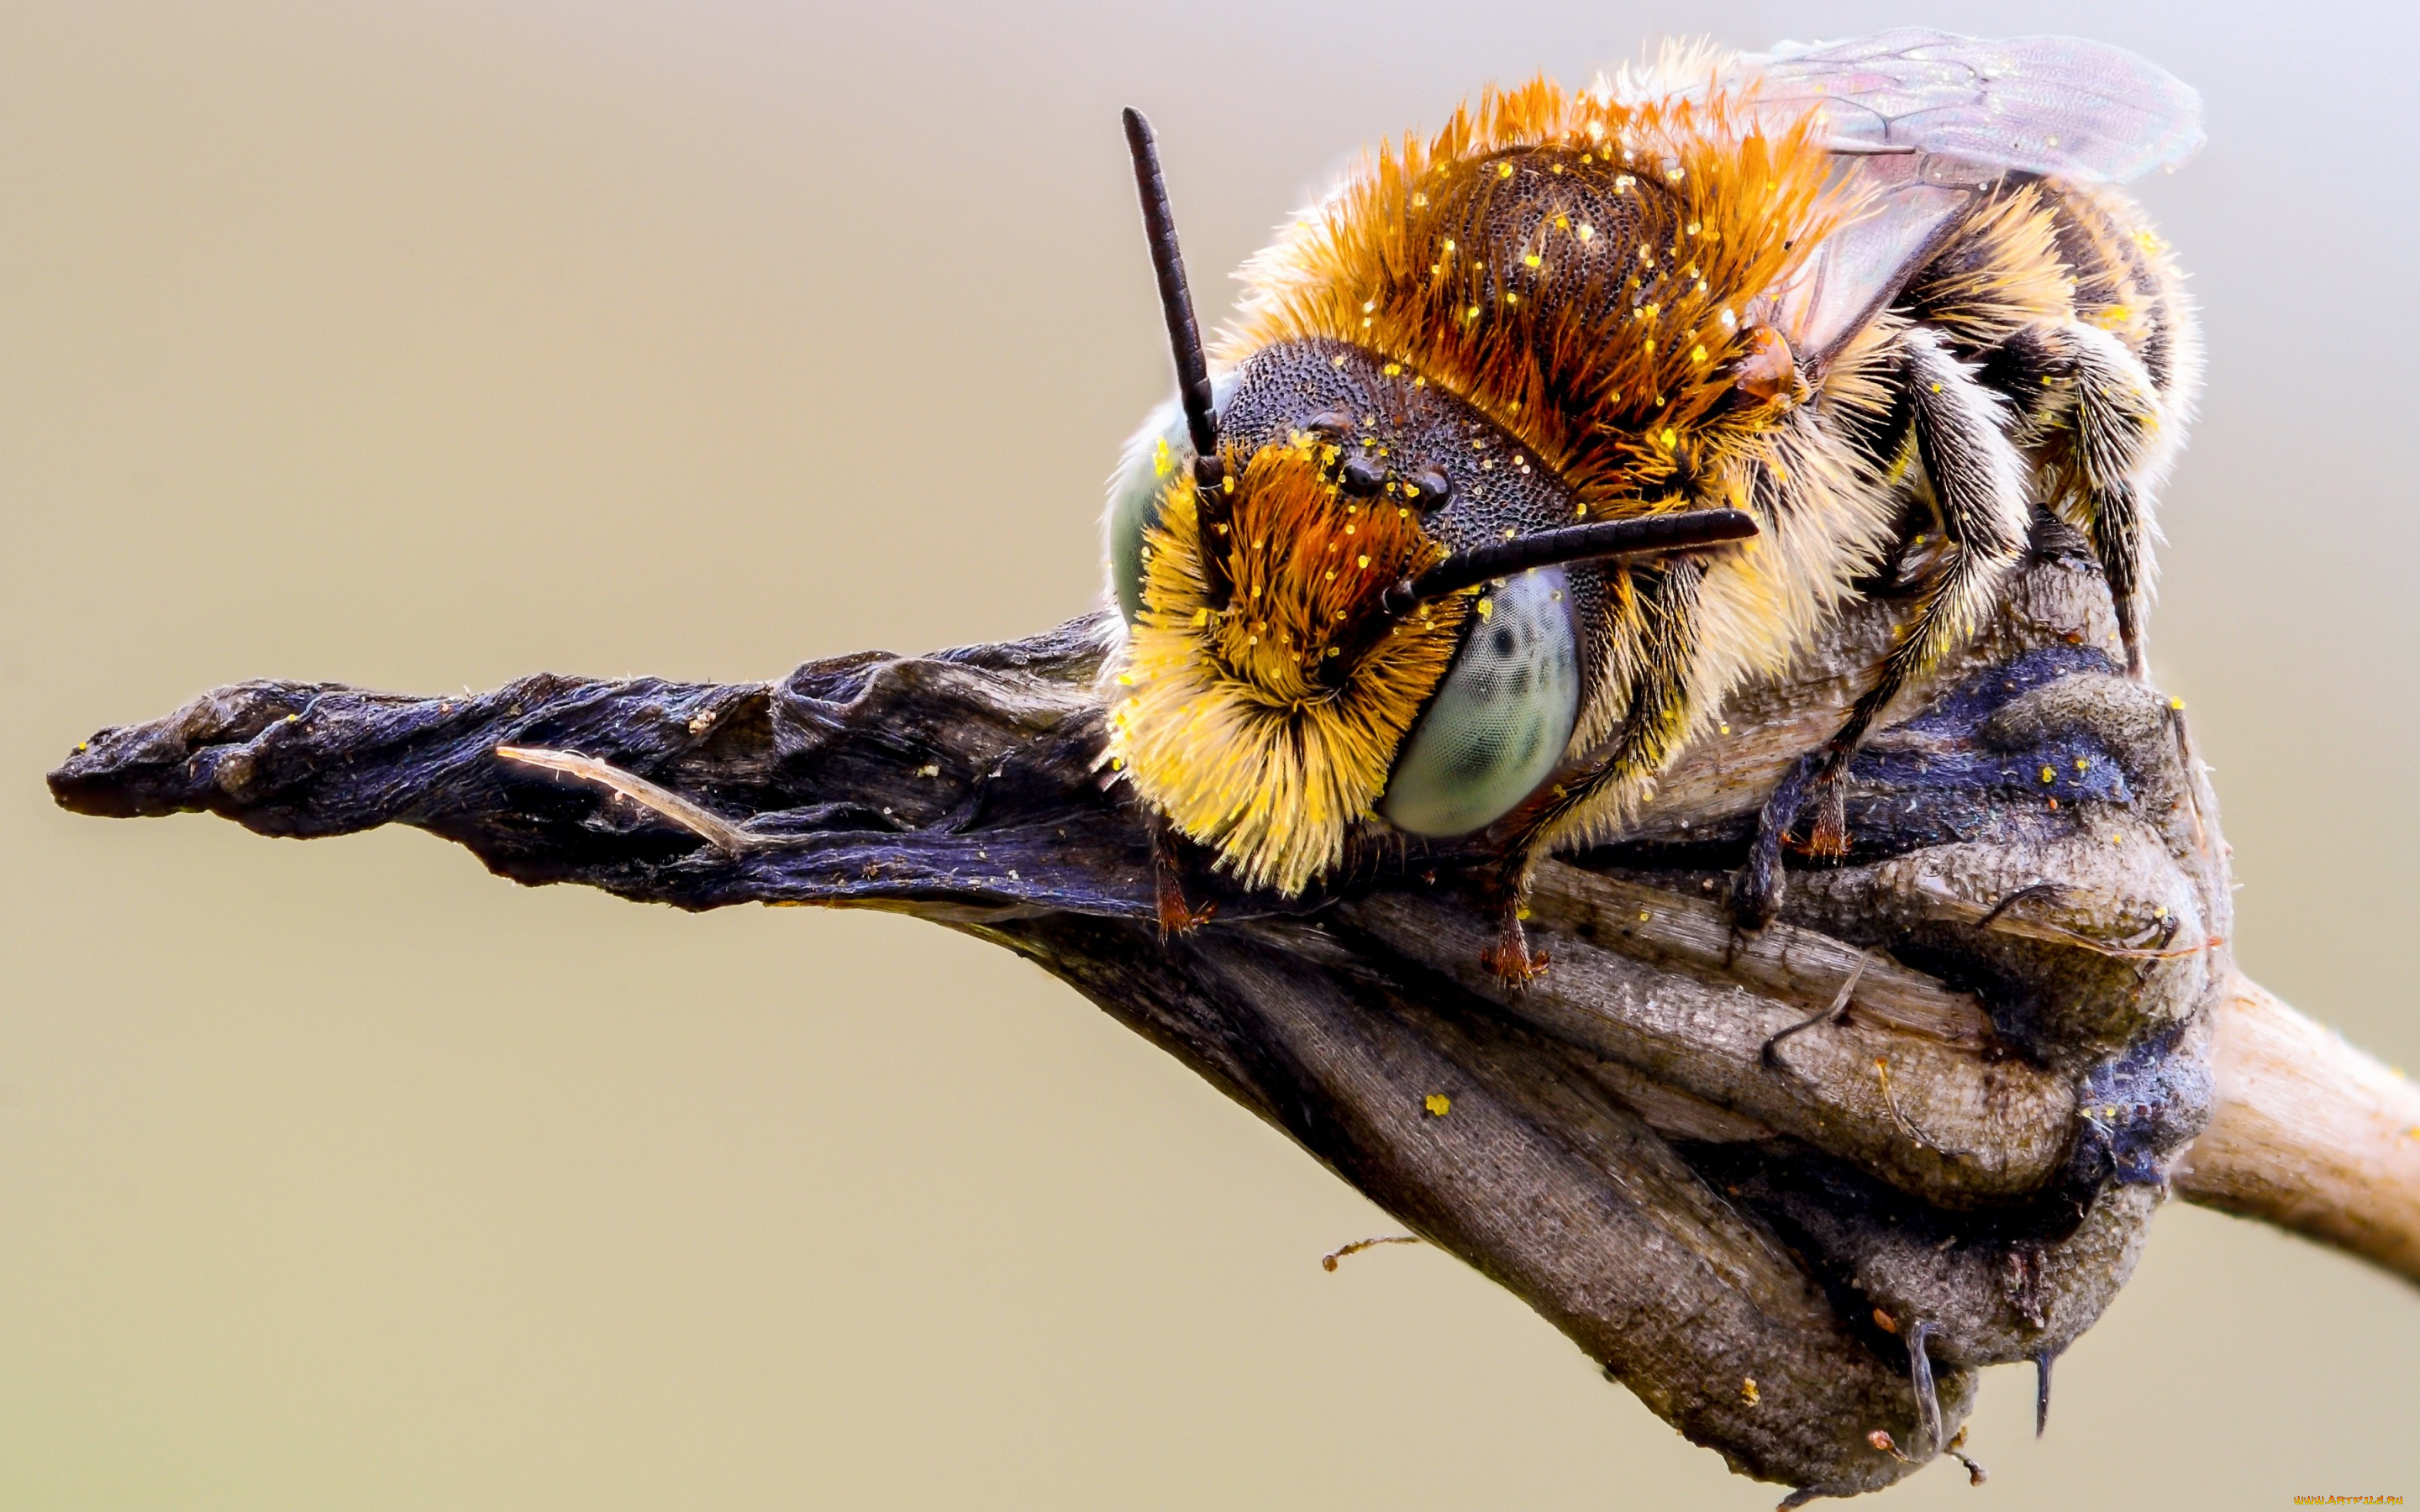 животные, пчелы, , осы, , шмели, растение, пыльца, фон, шмель, усики, макро, сухое, макросъемка, природа, шерстка, насекомое, детали, мордашка, глаза, пчела